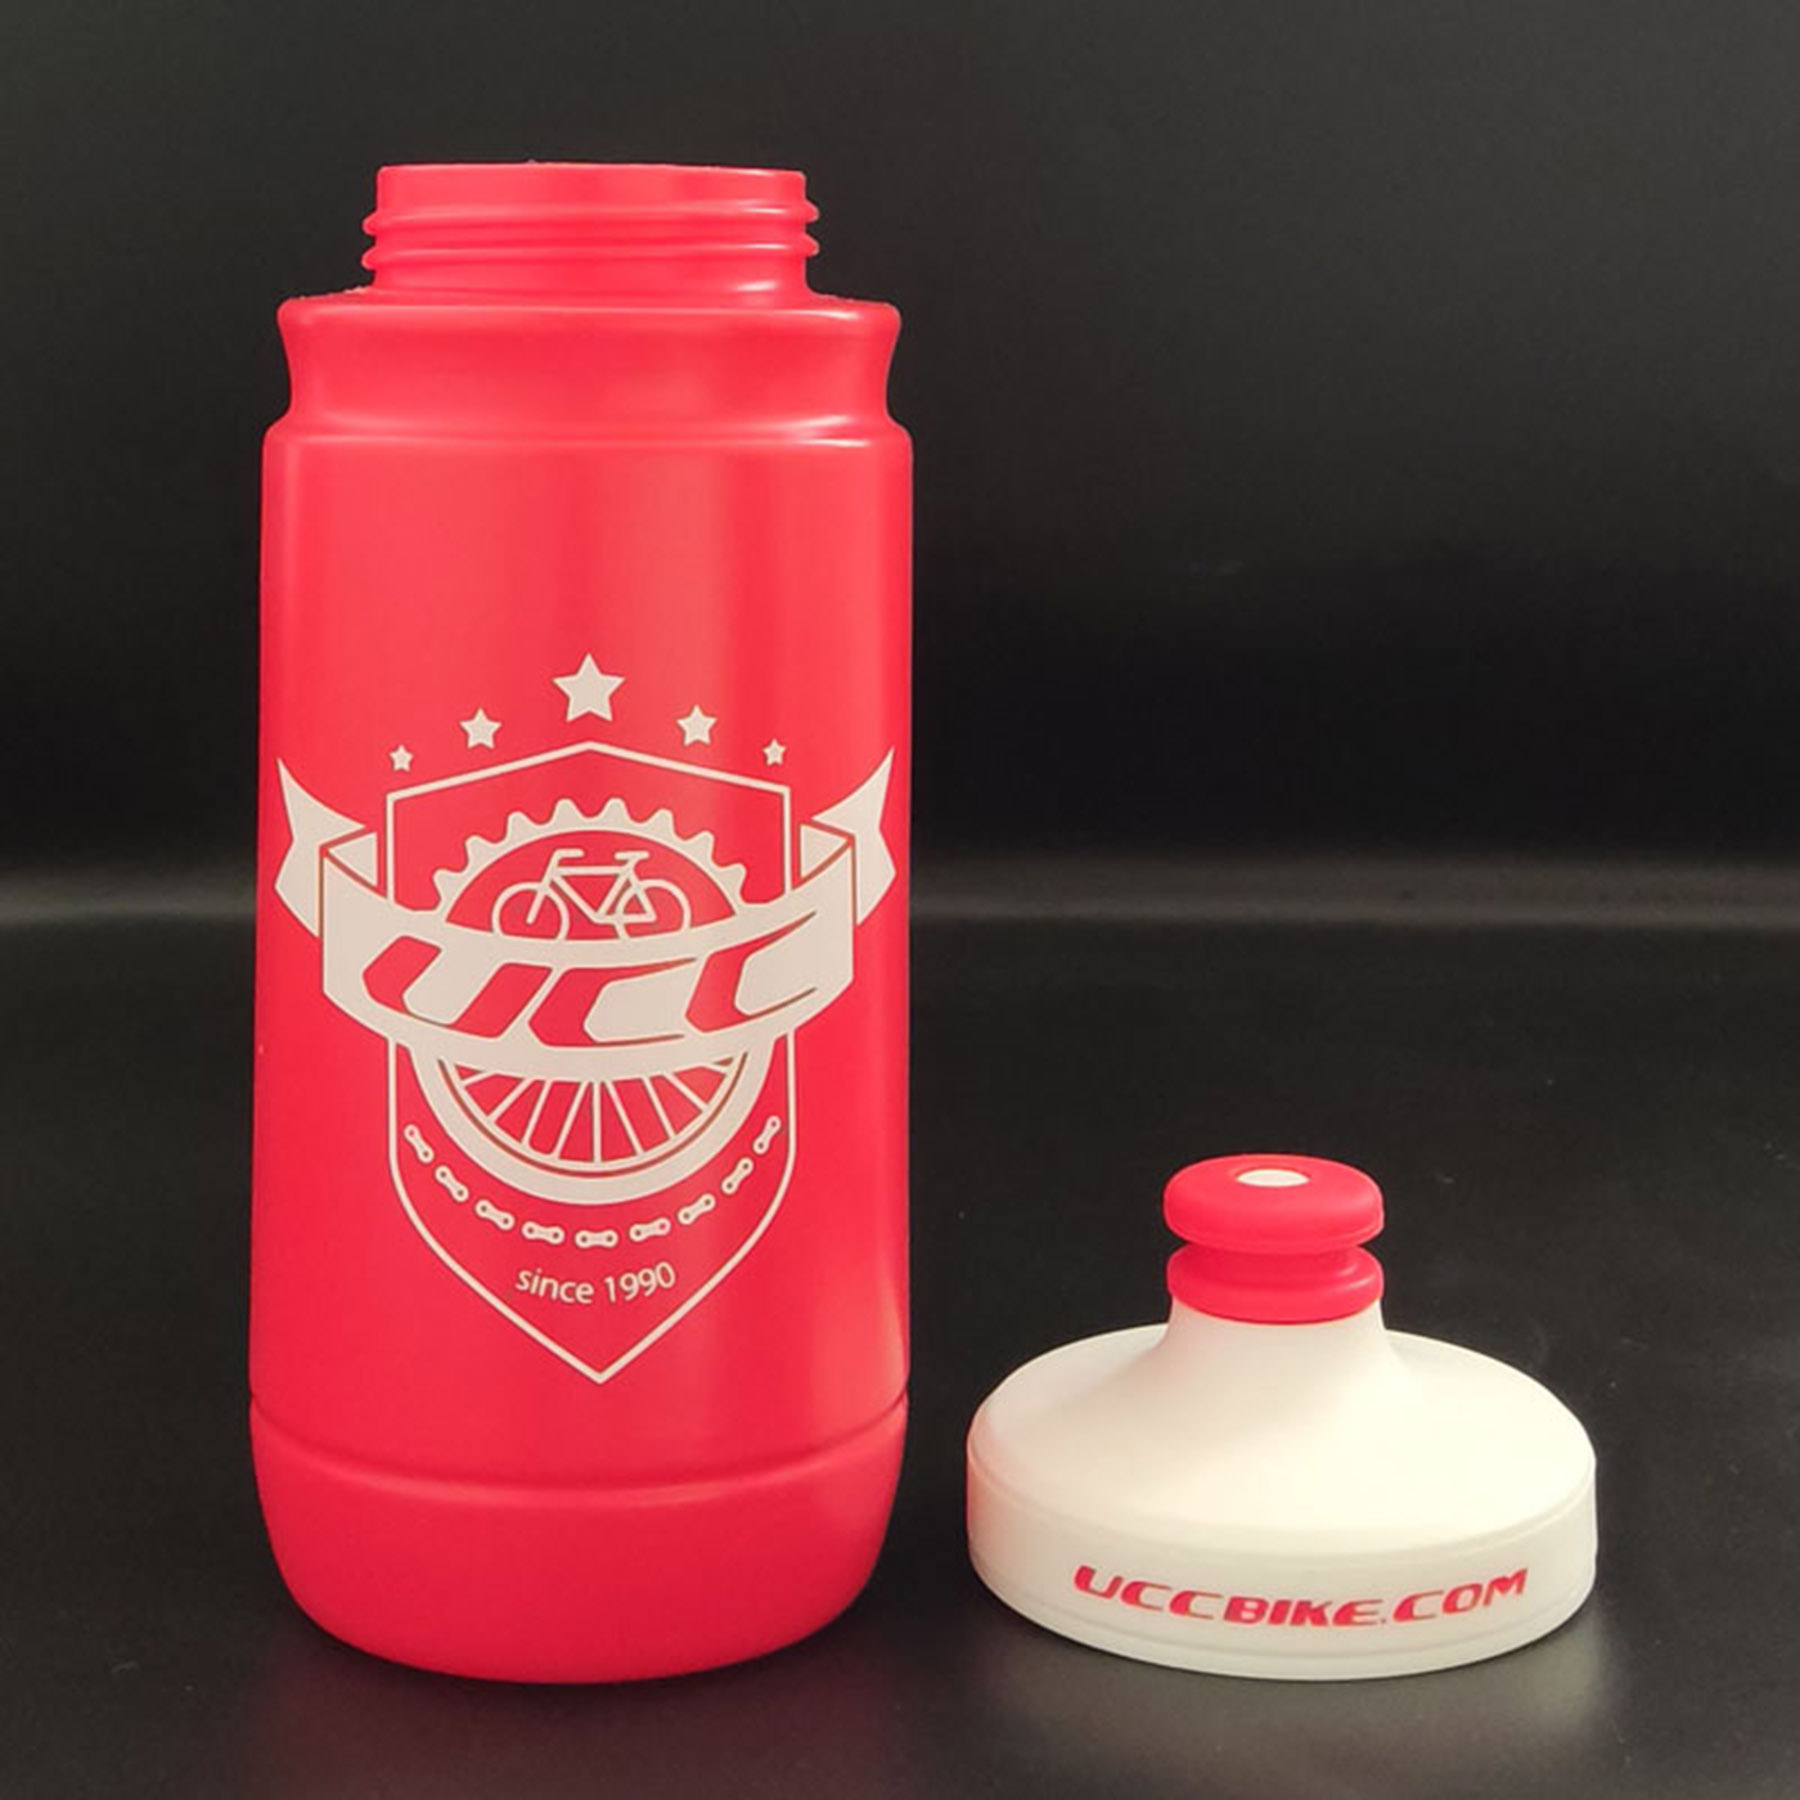 Leak Proof-BPA Free Bike Water Bottle